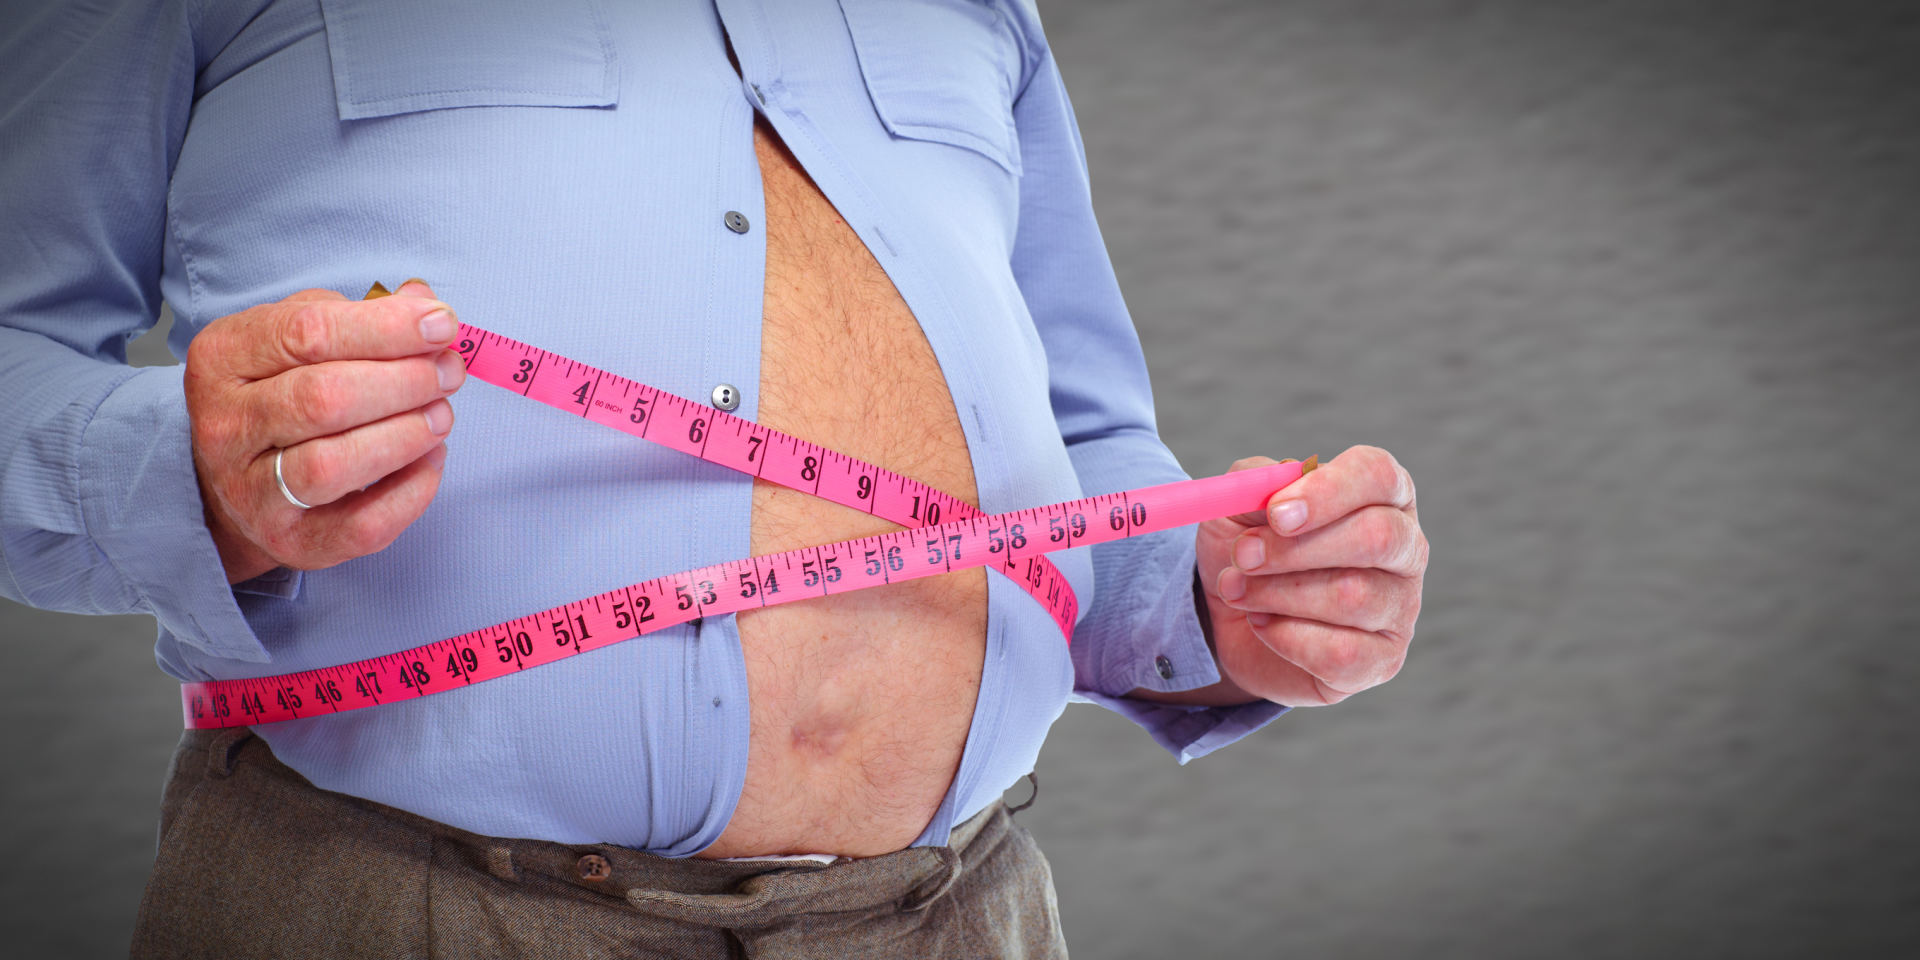 antinksčių nuovargis dėl kurio sumažėja svoris kaip priversti sims numesti svorį greičiau